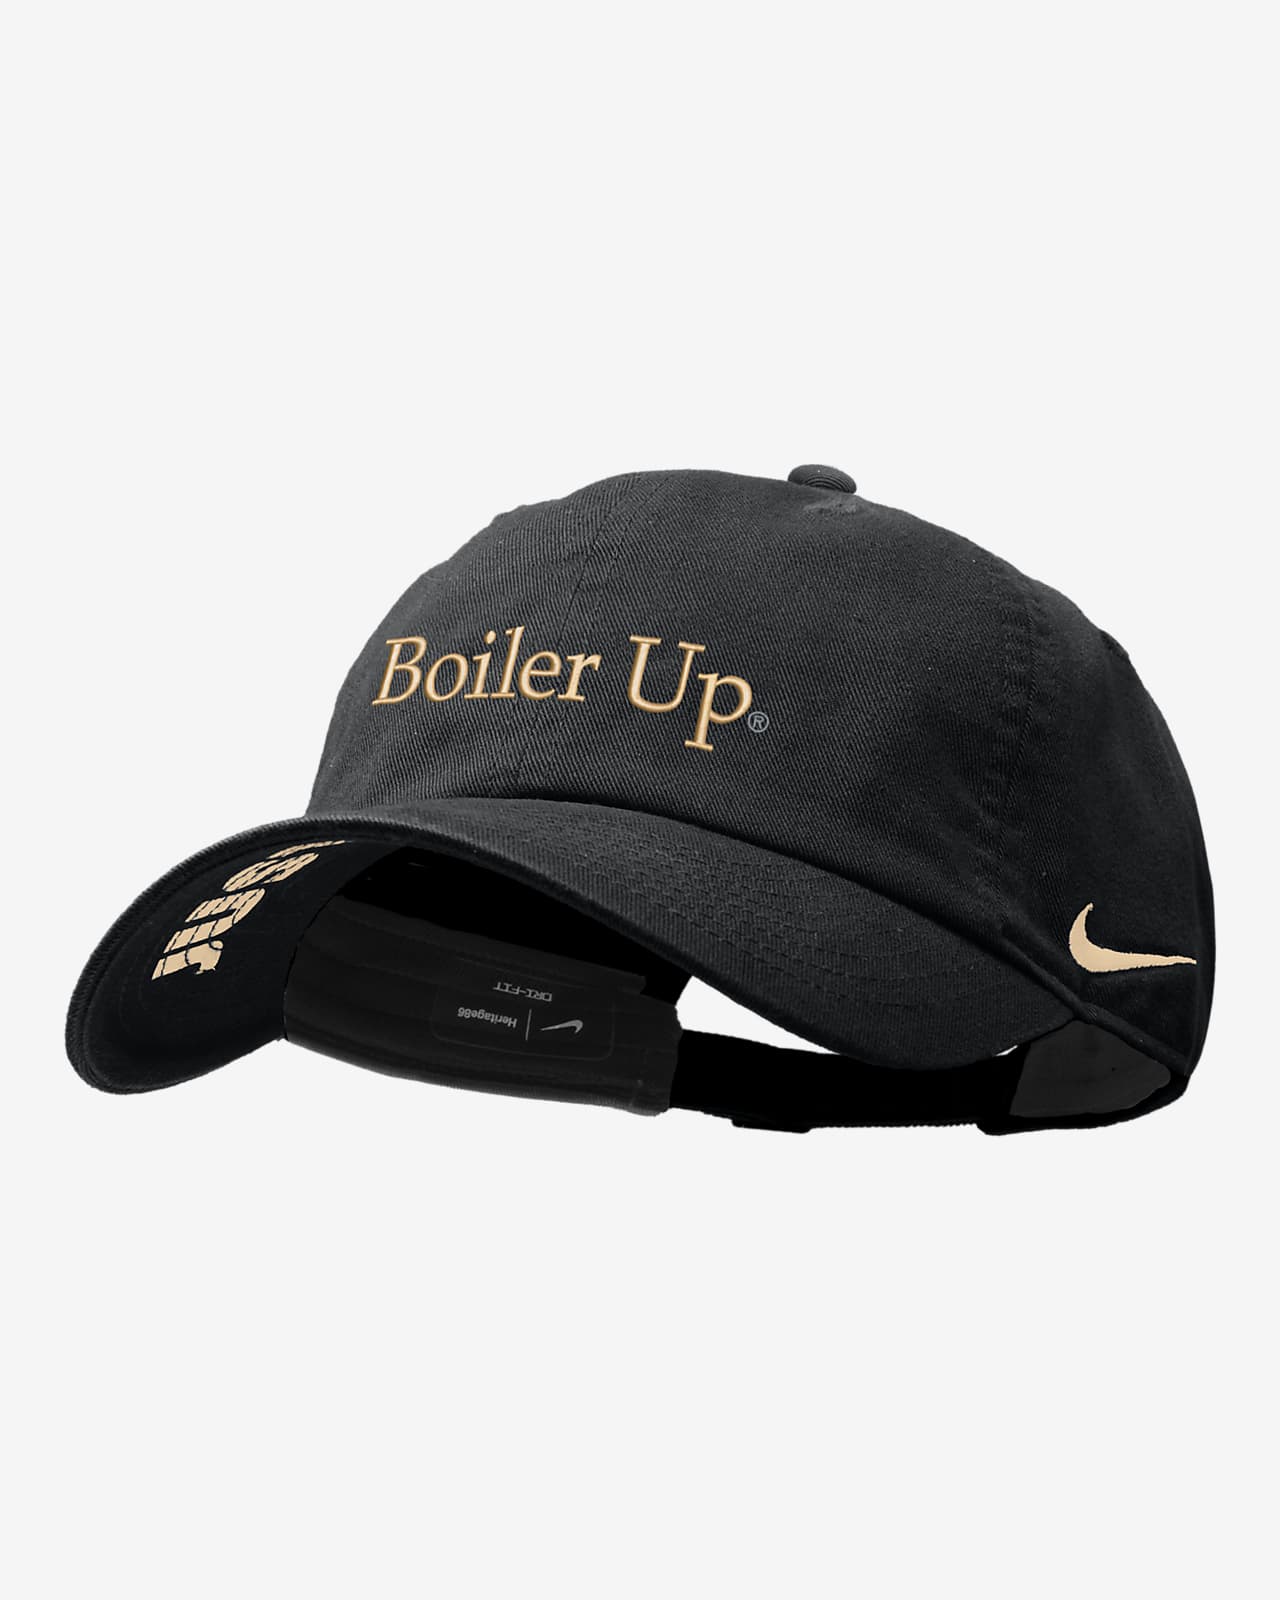 Purdue Nike College Cap